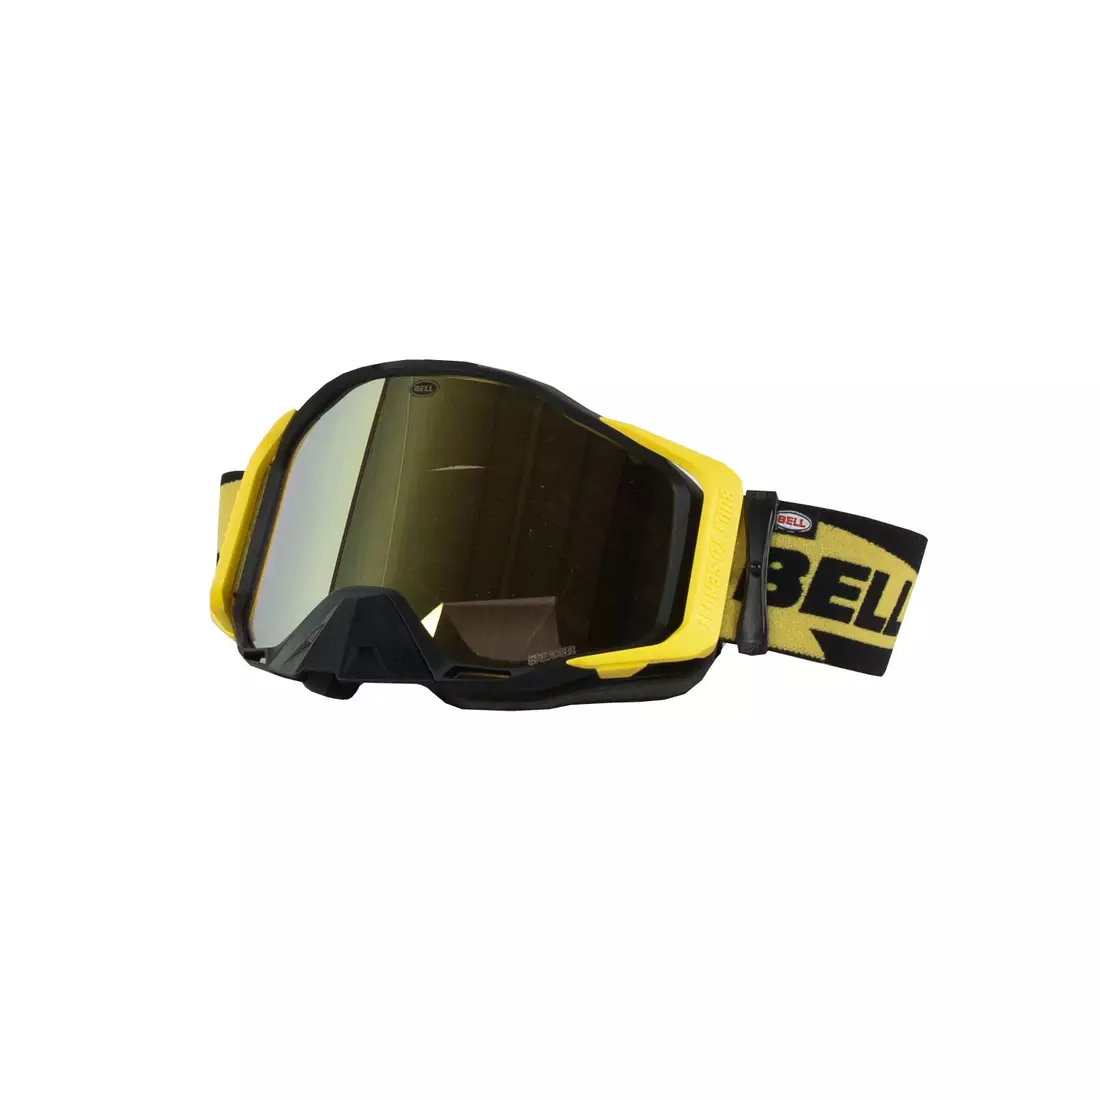 BELL kerékpáros szemüveg BREAKER Bolt Matte Black/Yellow, BEL-7122862